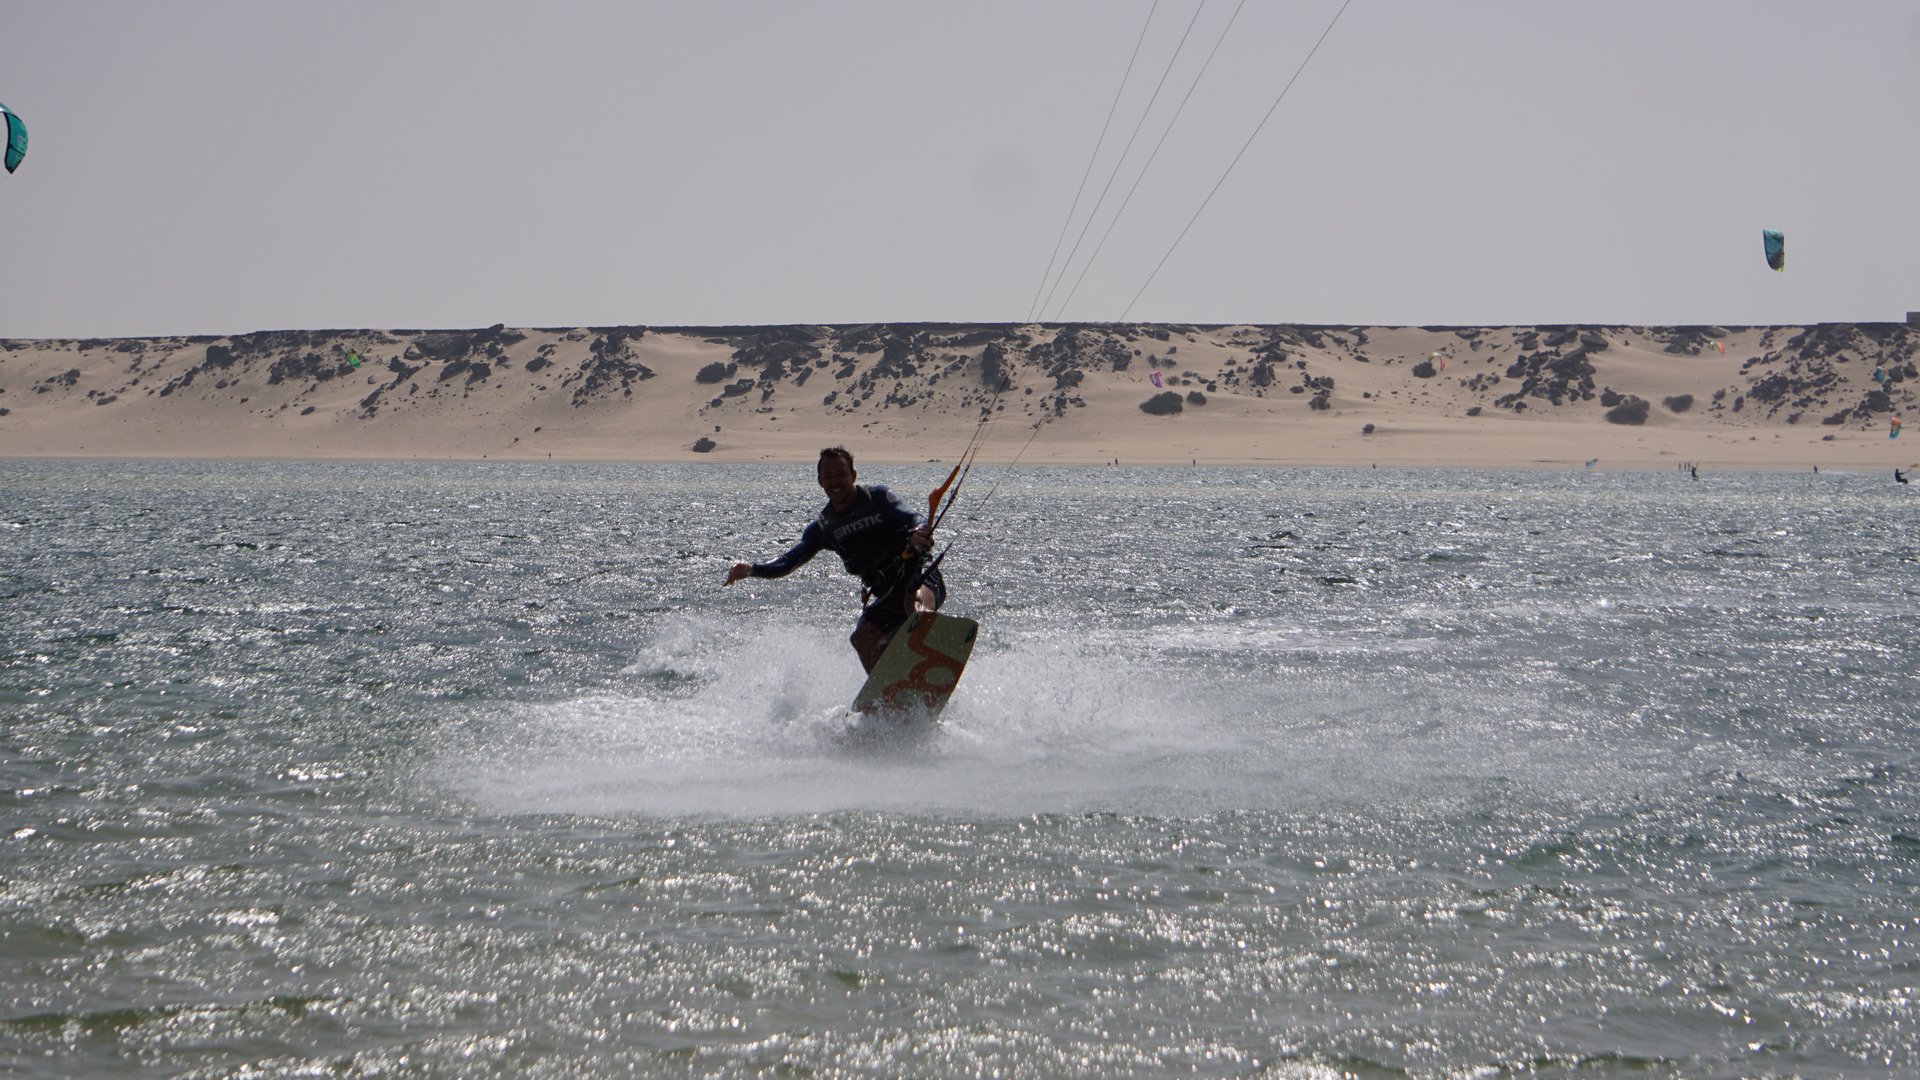 Kitesurfer having fund in Dakhla Kitesurfing Bay